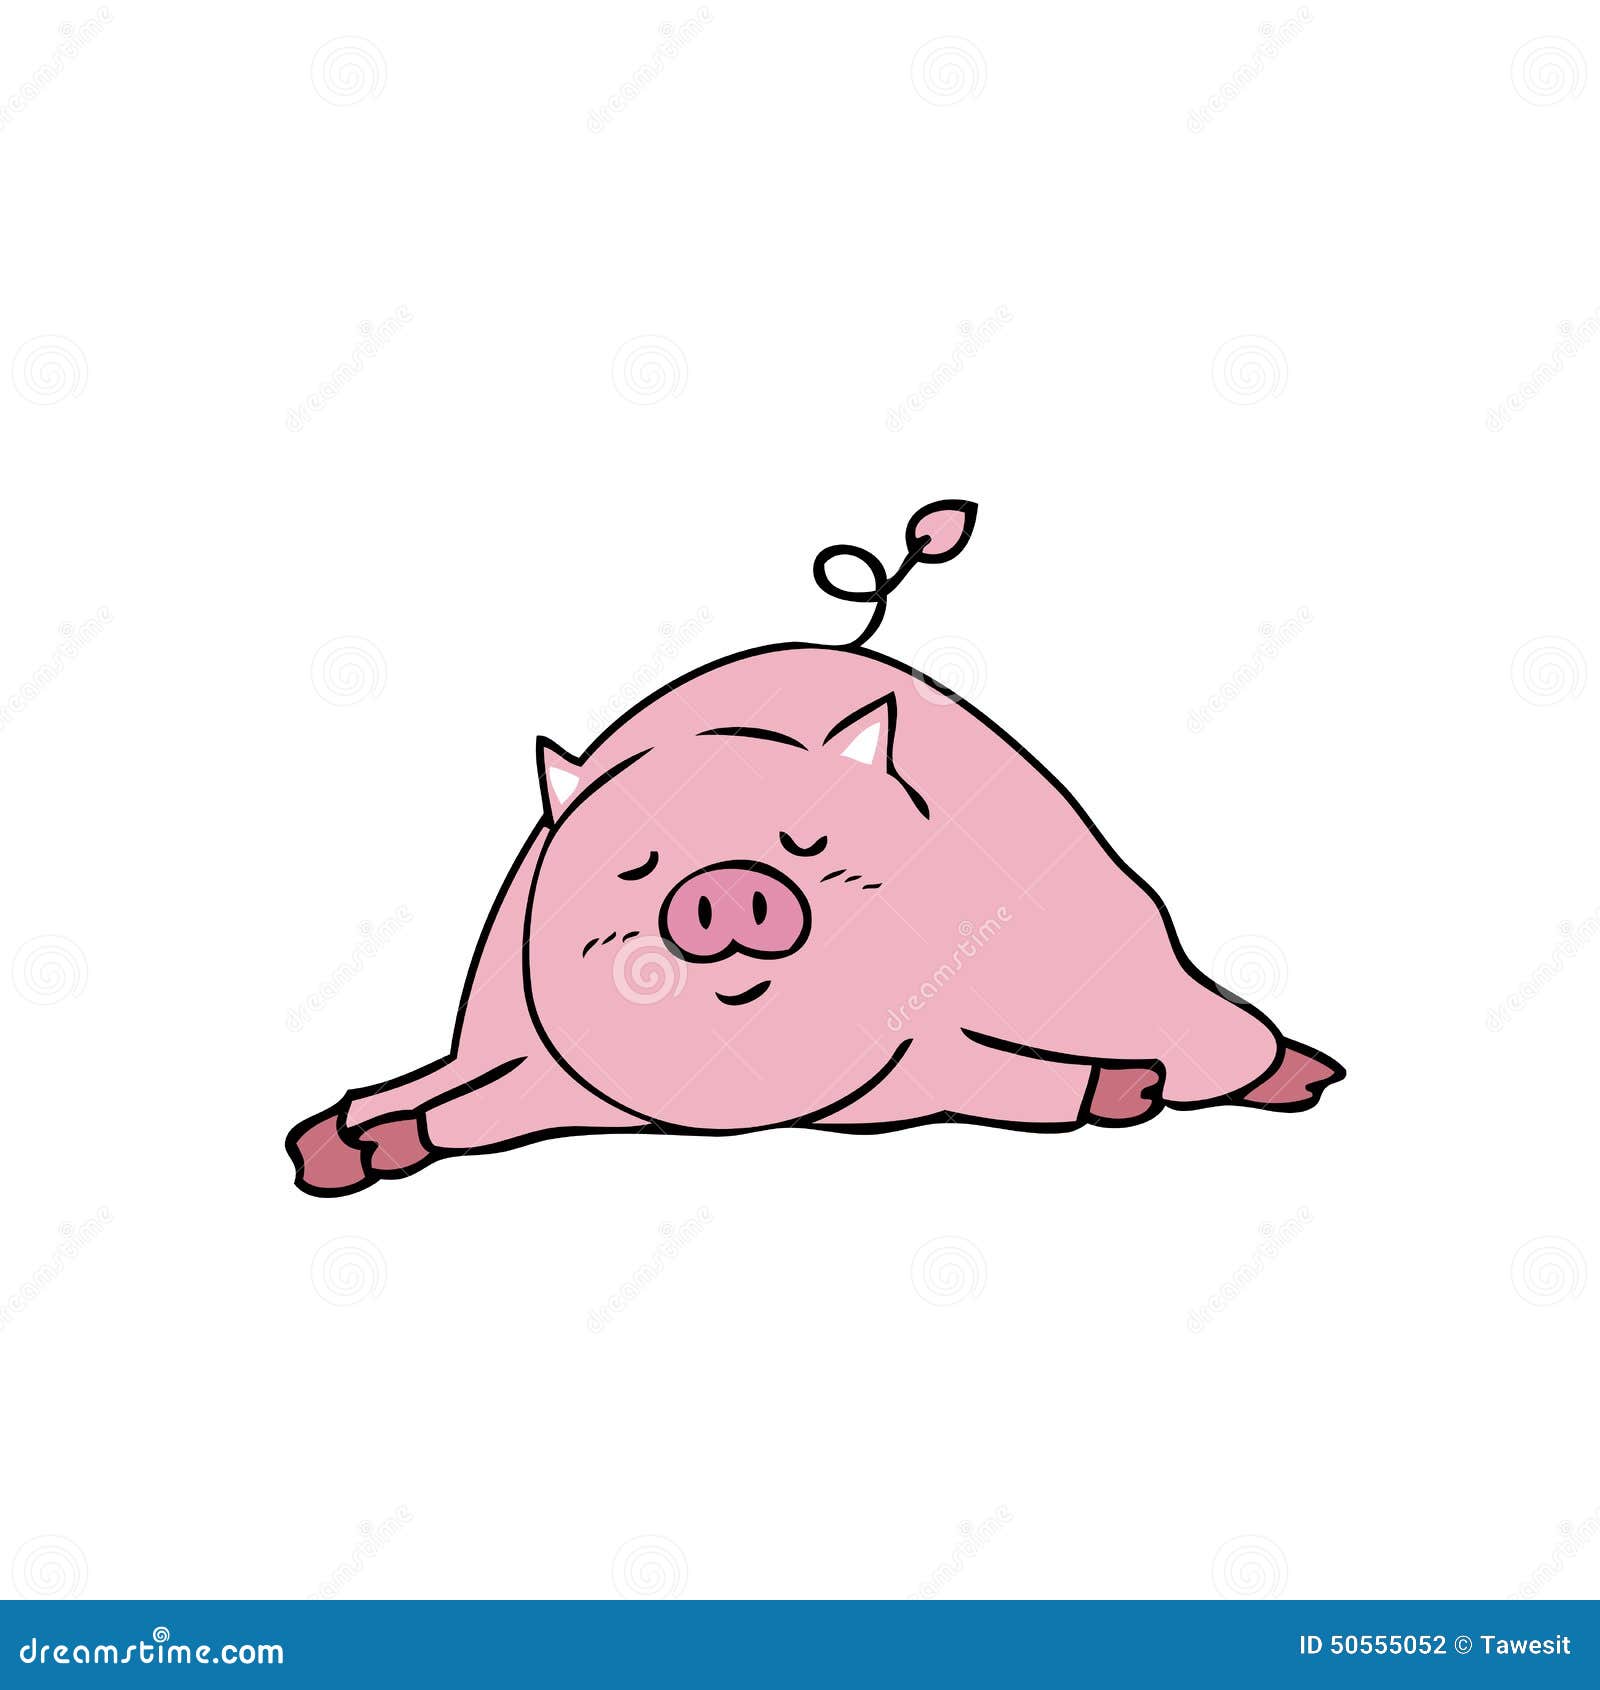 猪的搞笑图片或者表情包 - 知乎